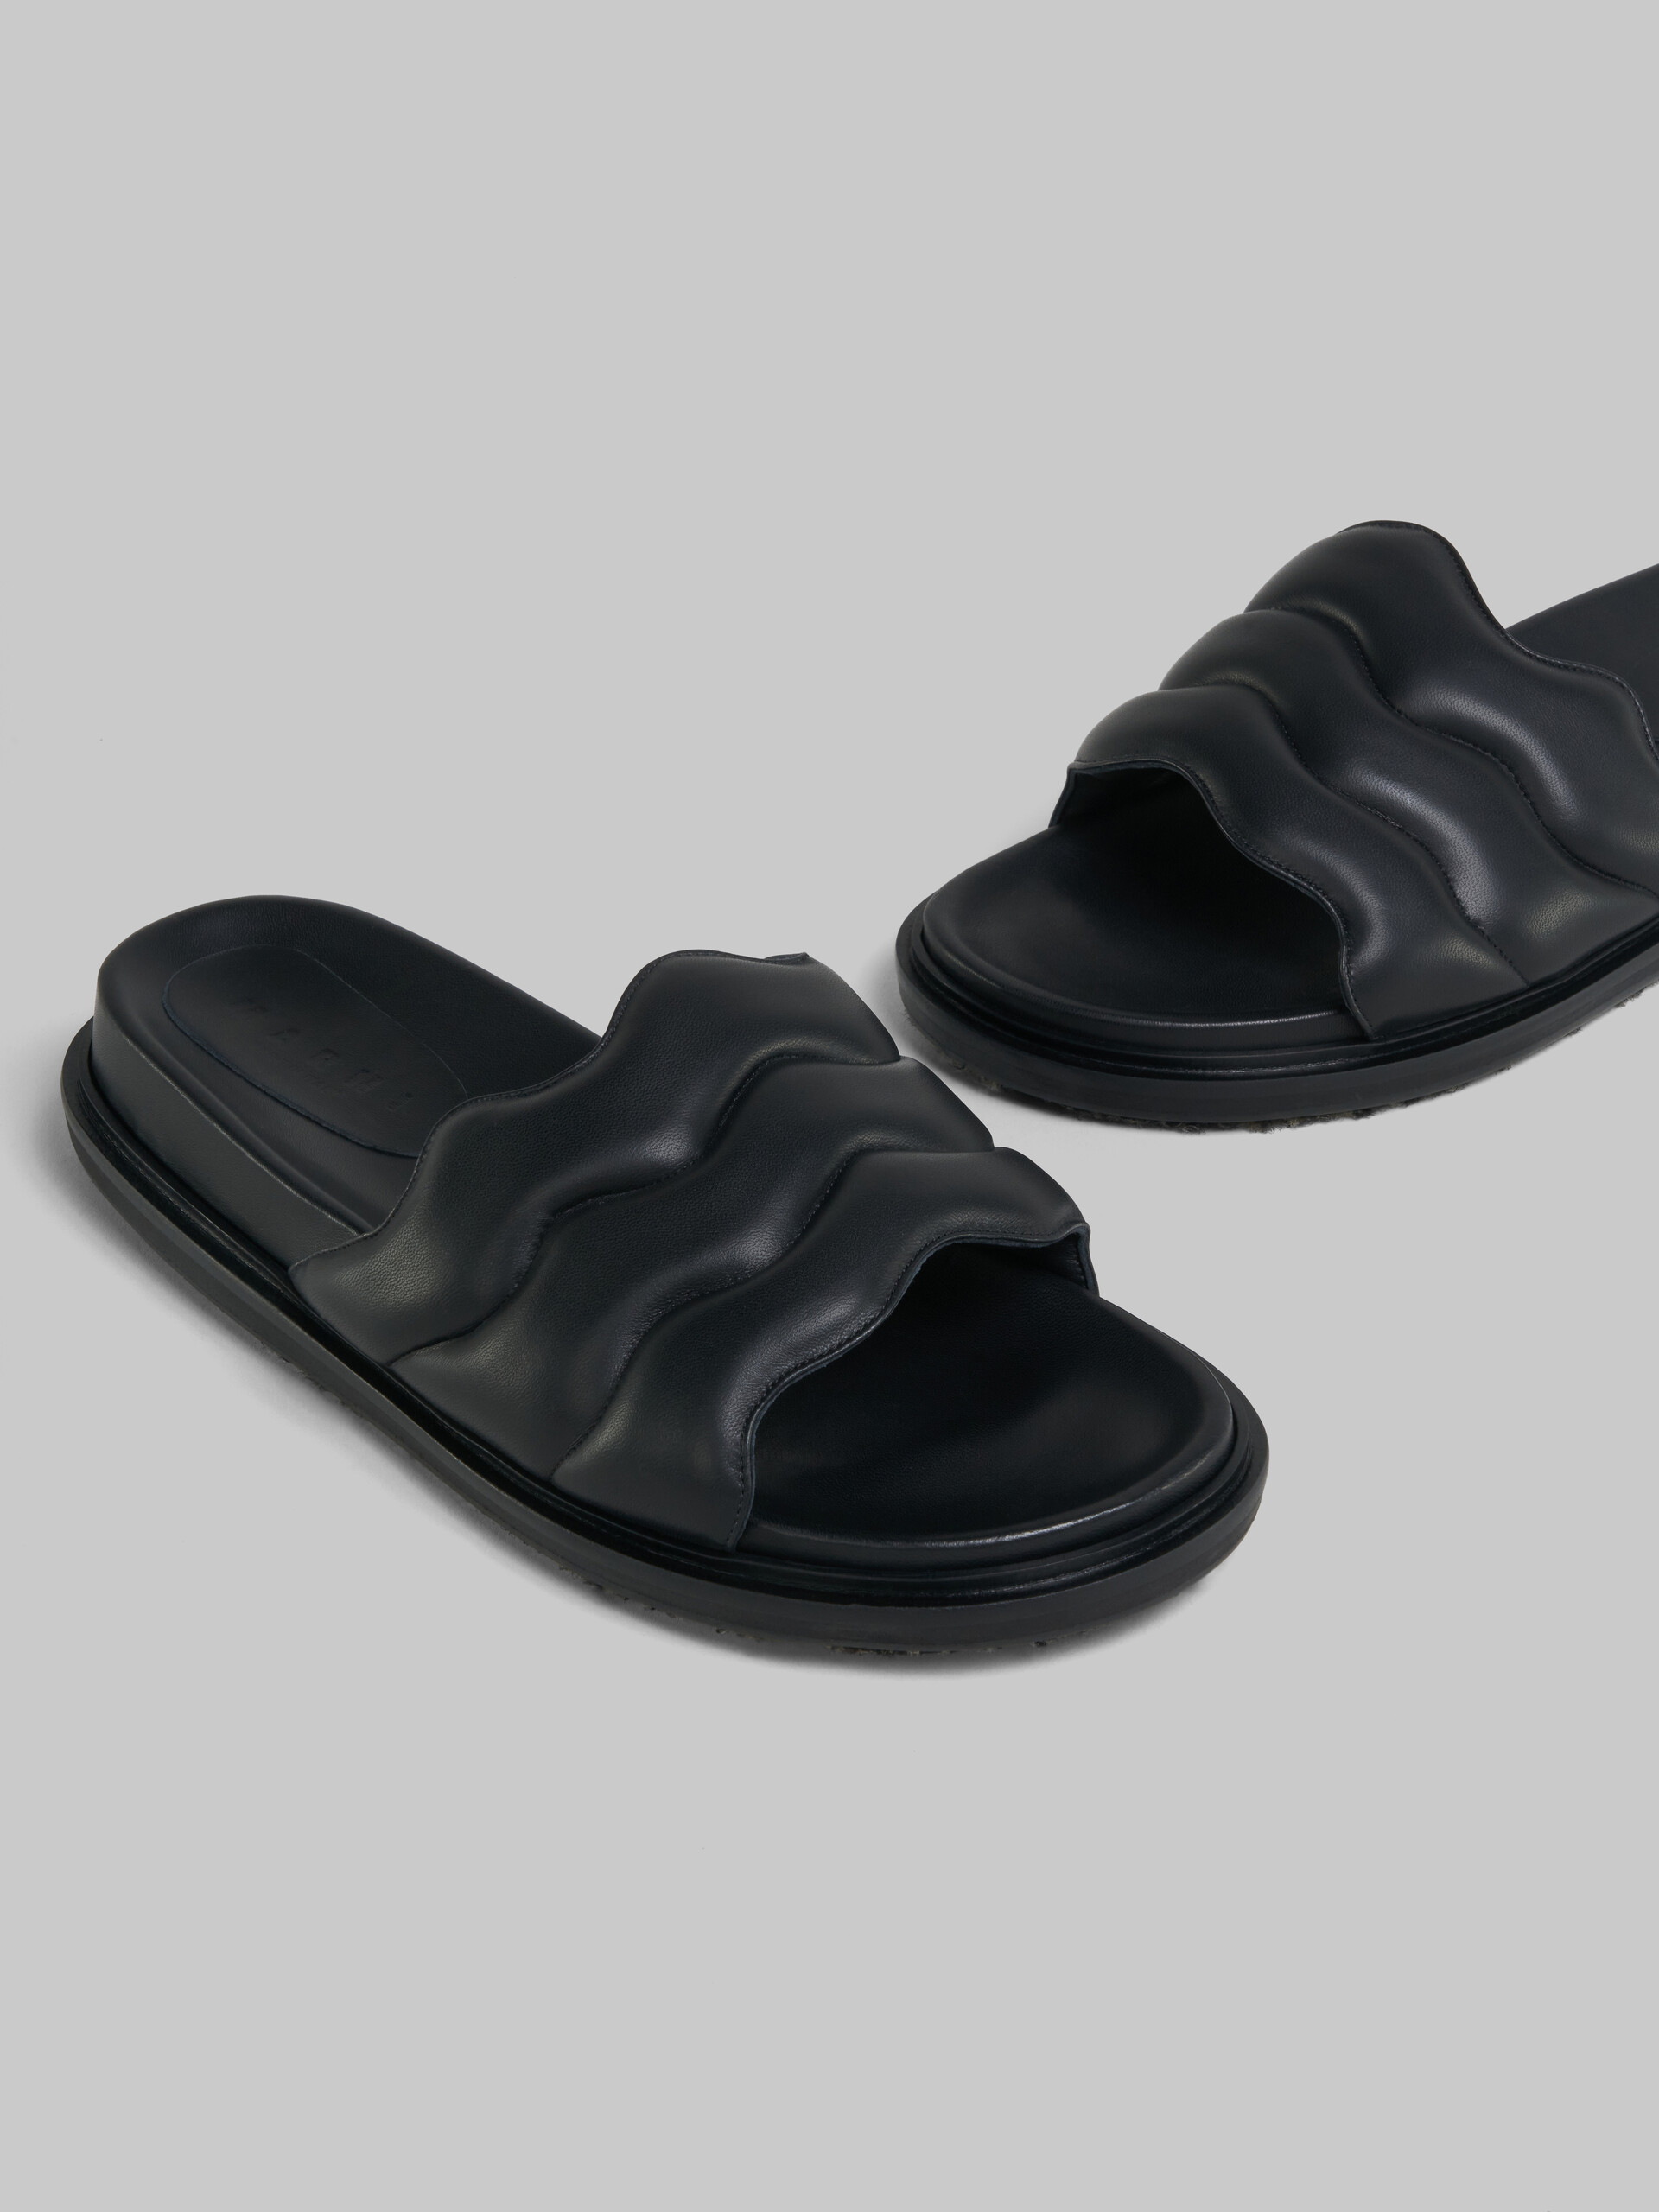 Black wavy leather slide sandal - Sandals - Image 5